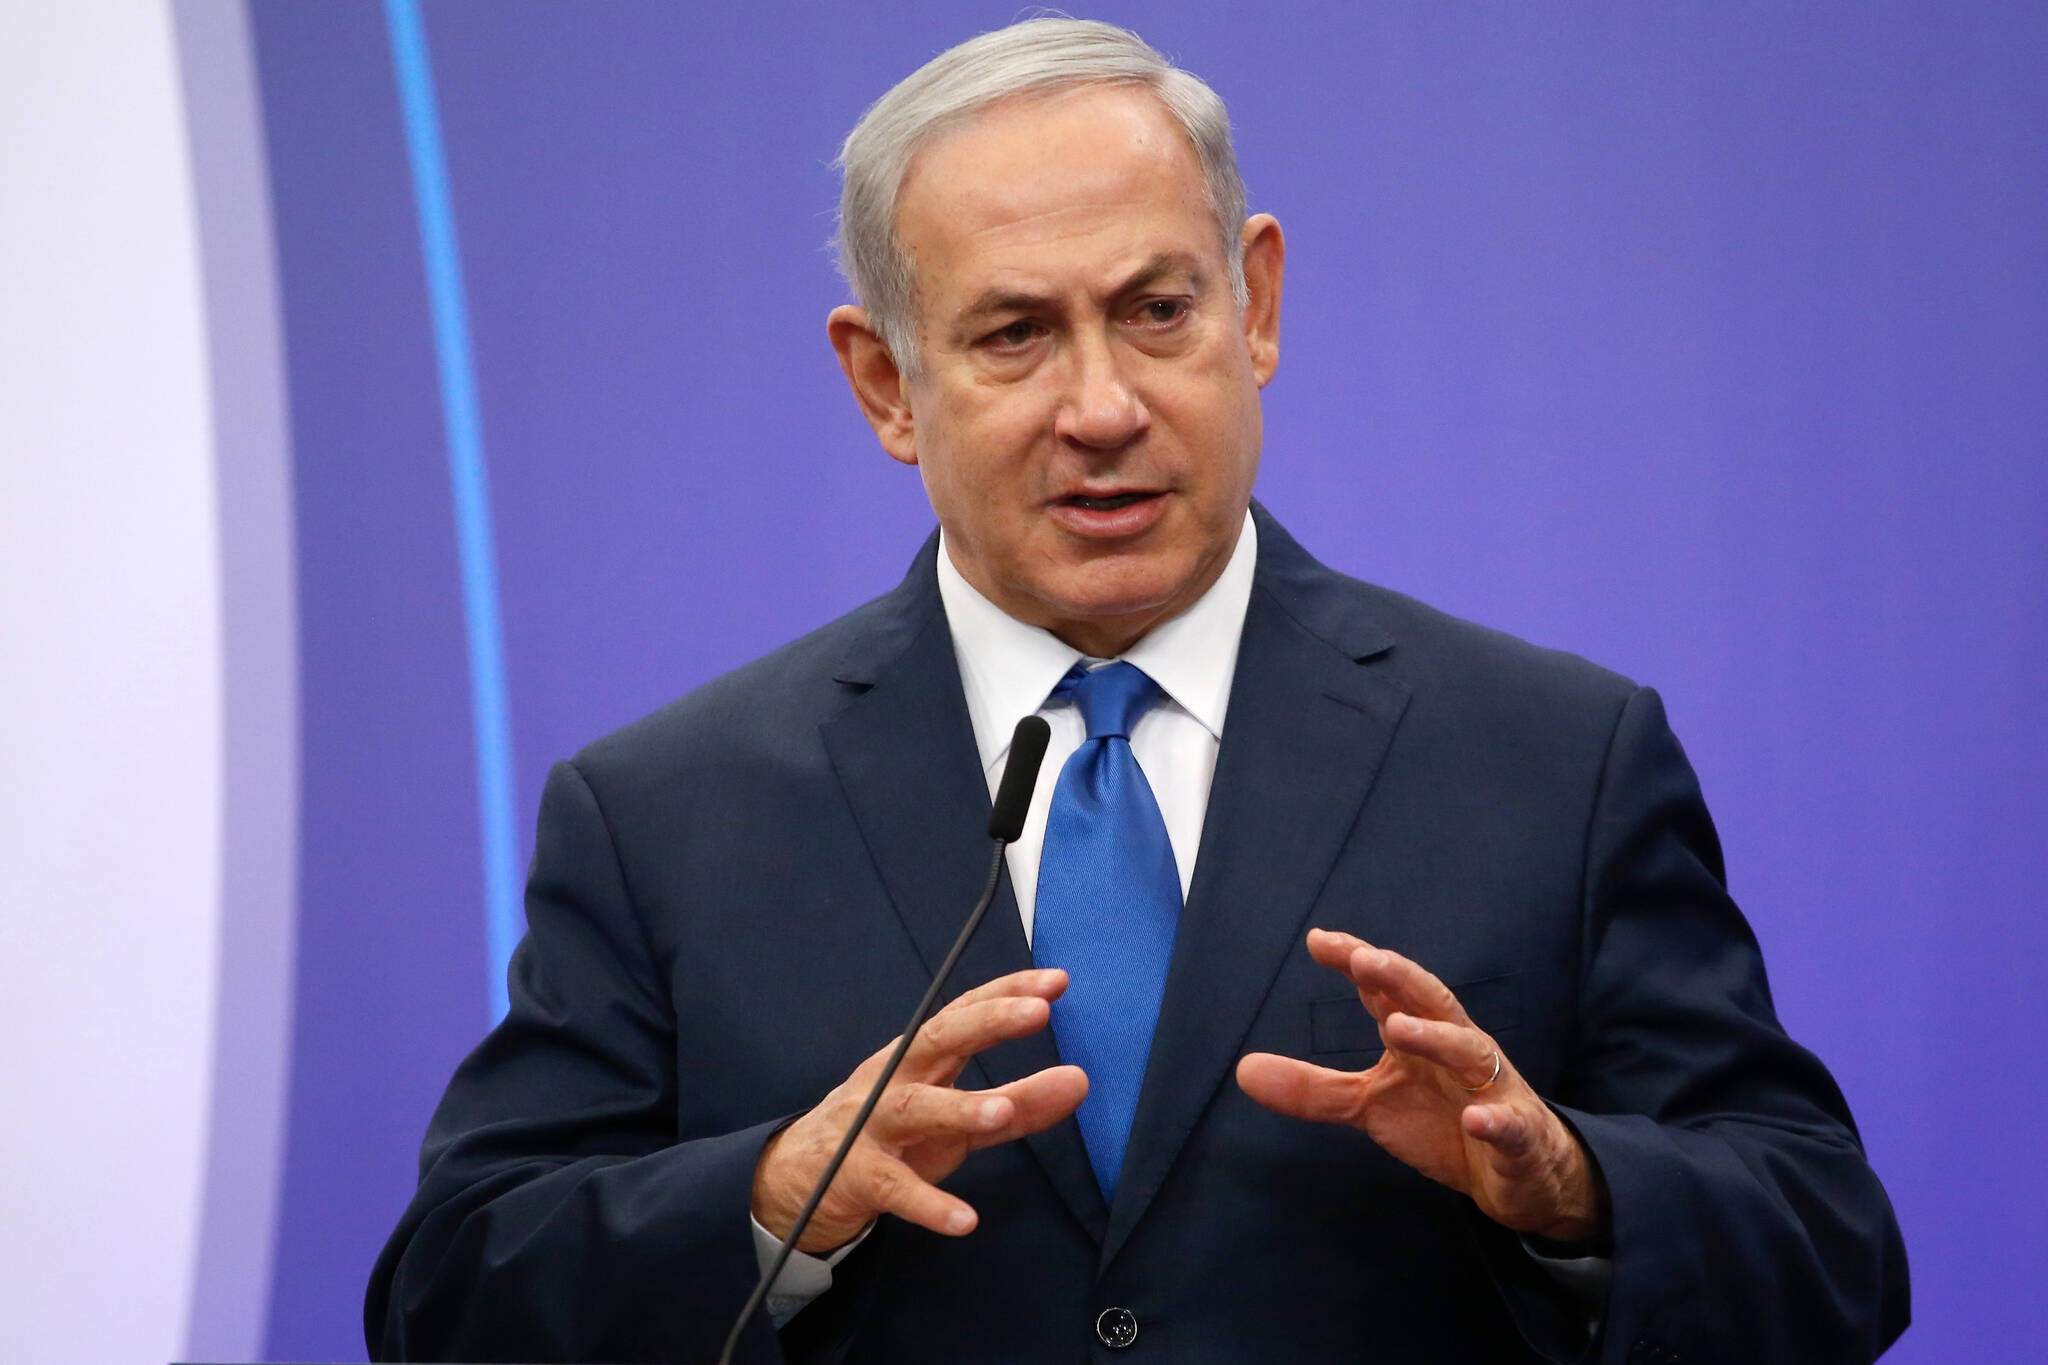 Benjamin Netanyahu, Israel’s prime minister shown during a meeting in Belgium. (Bloomberg photo by Dario Pignatelli)